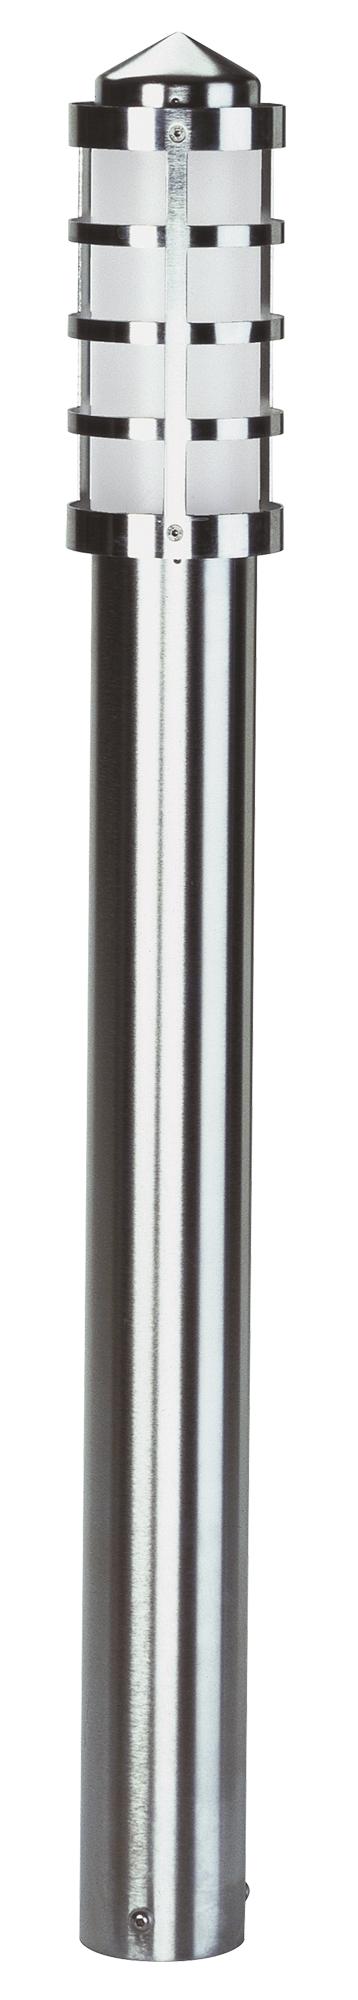 Albert LeuchtenPollerleuchte Typ Nr. 2284 - Edelstahl, für 1 x Lampe, E27